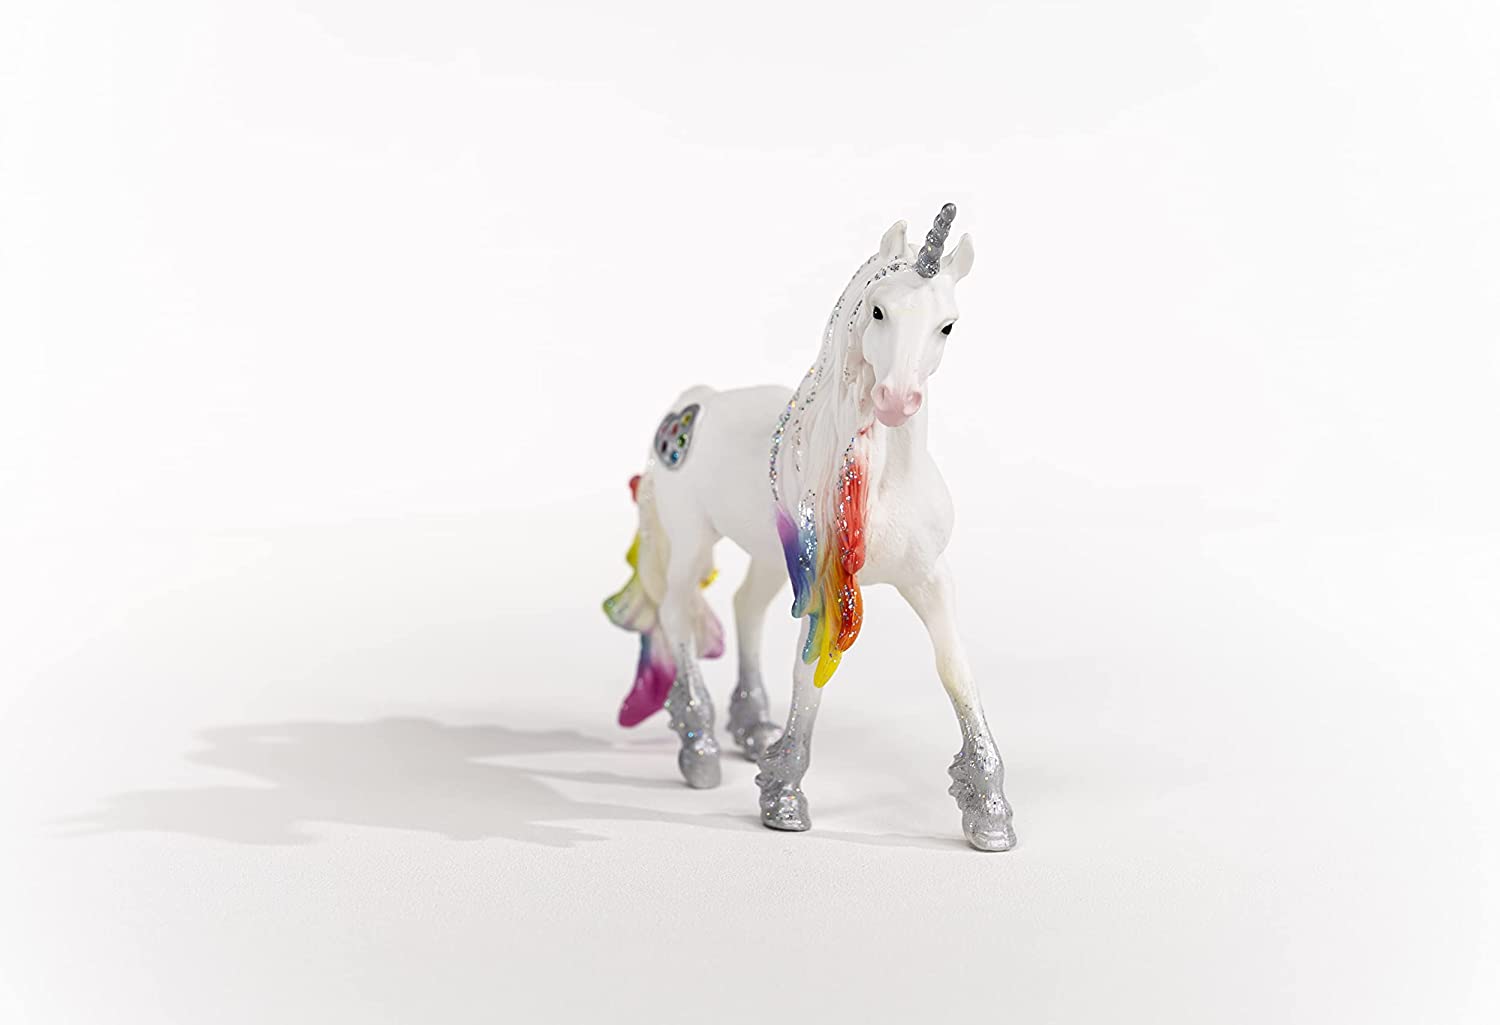 Schleich Rainbow Love Unicorn Stallion